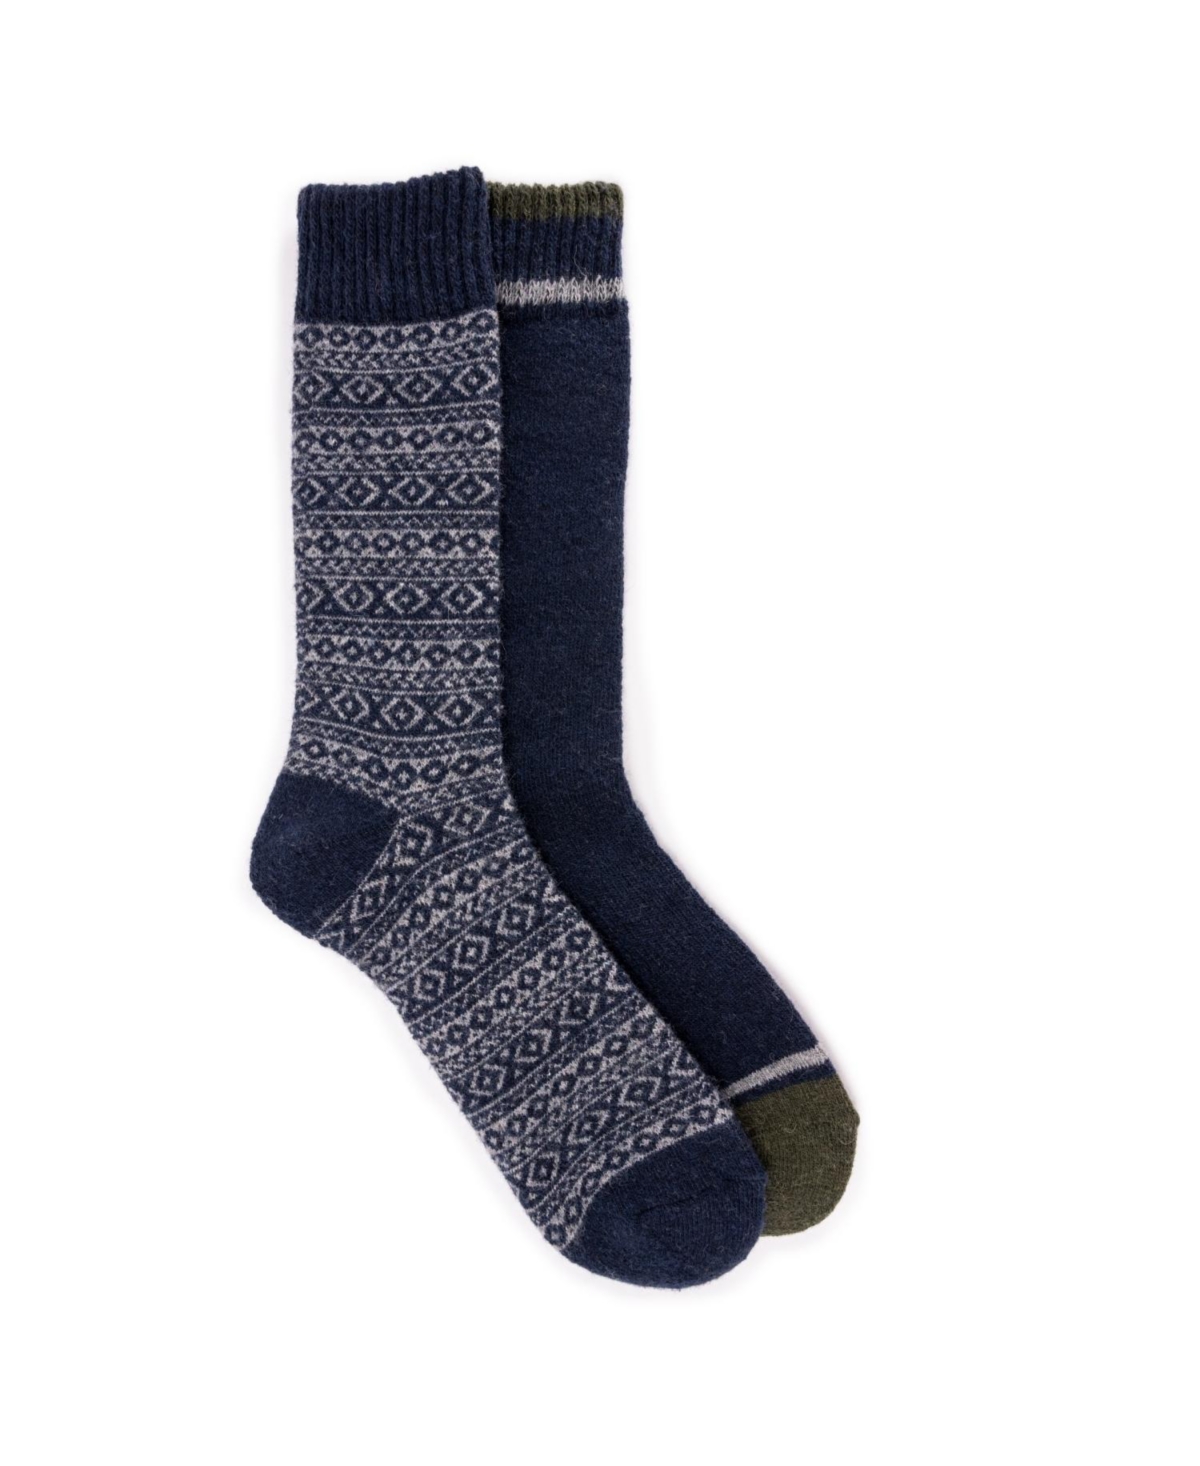 Men's 2 Pair Pack Wool Socks - Burgundy/black